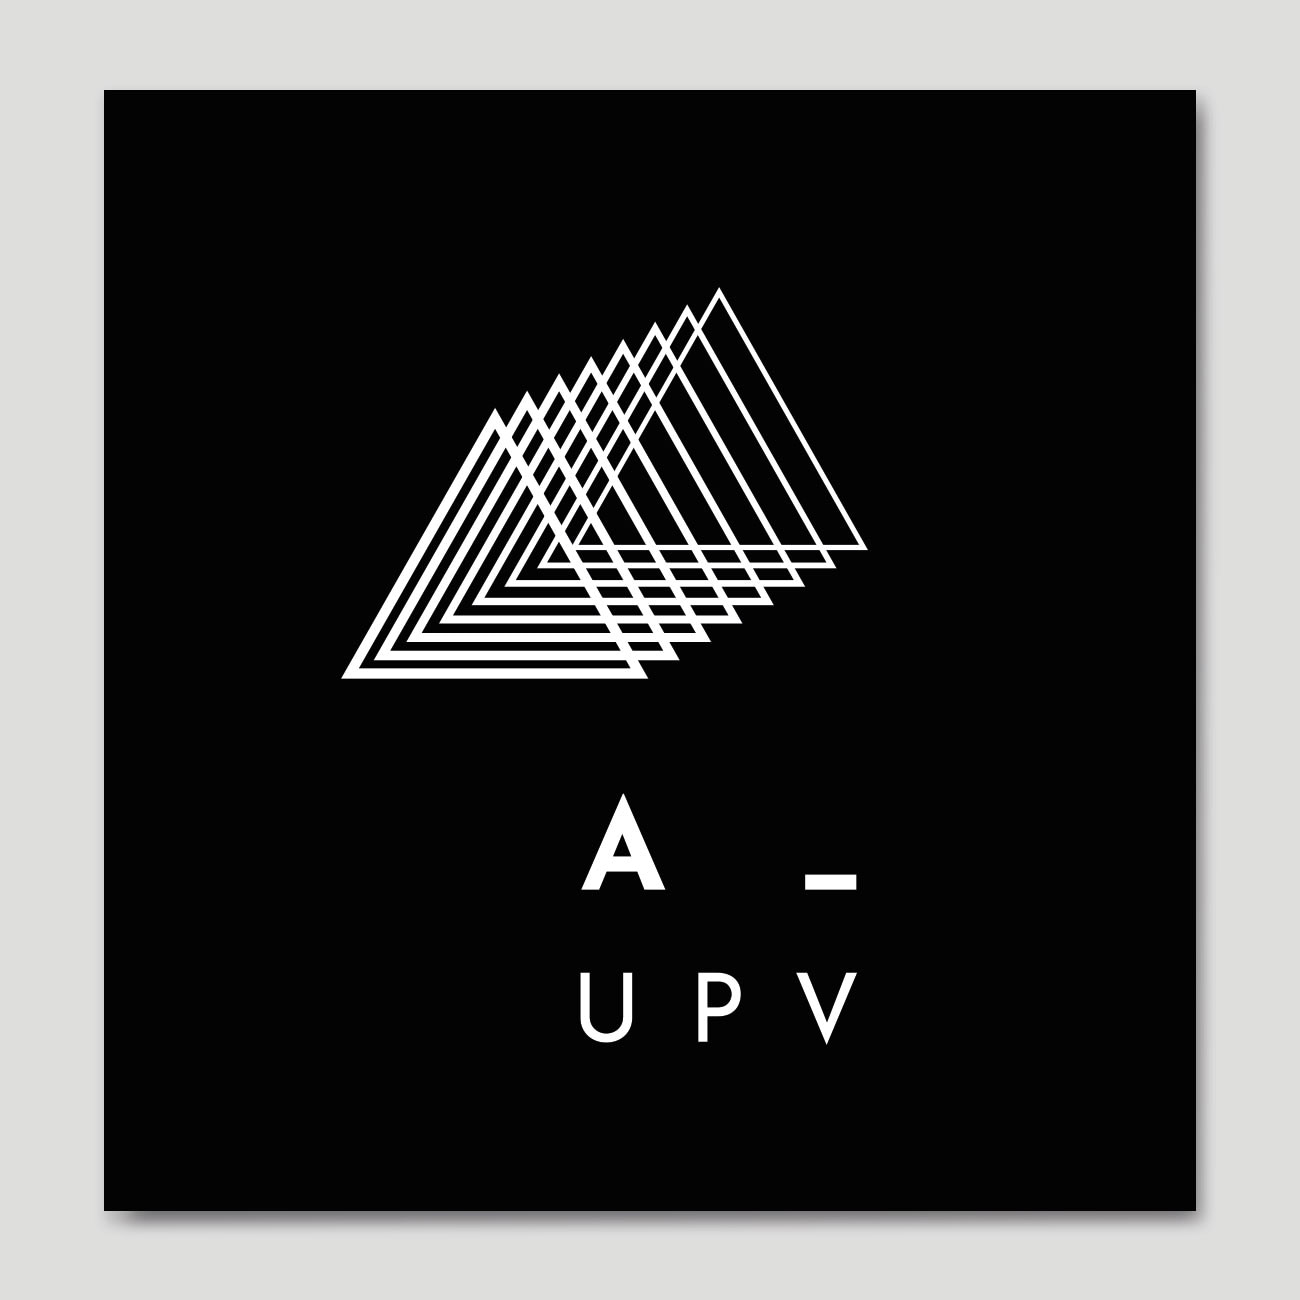 Identidad corporativa Animación UPV por Creatias